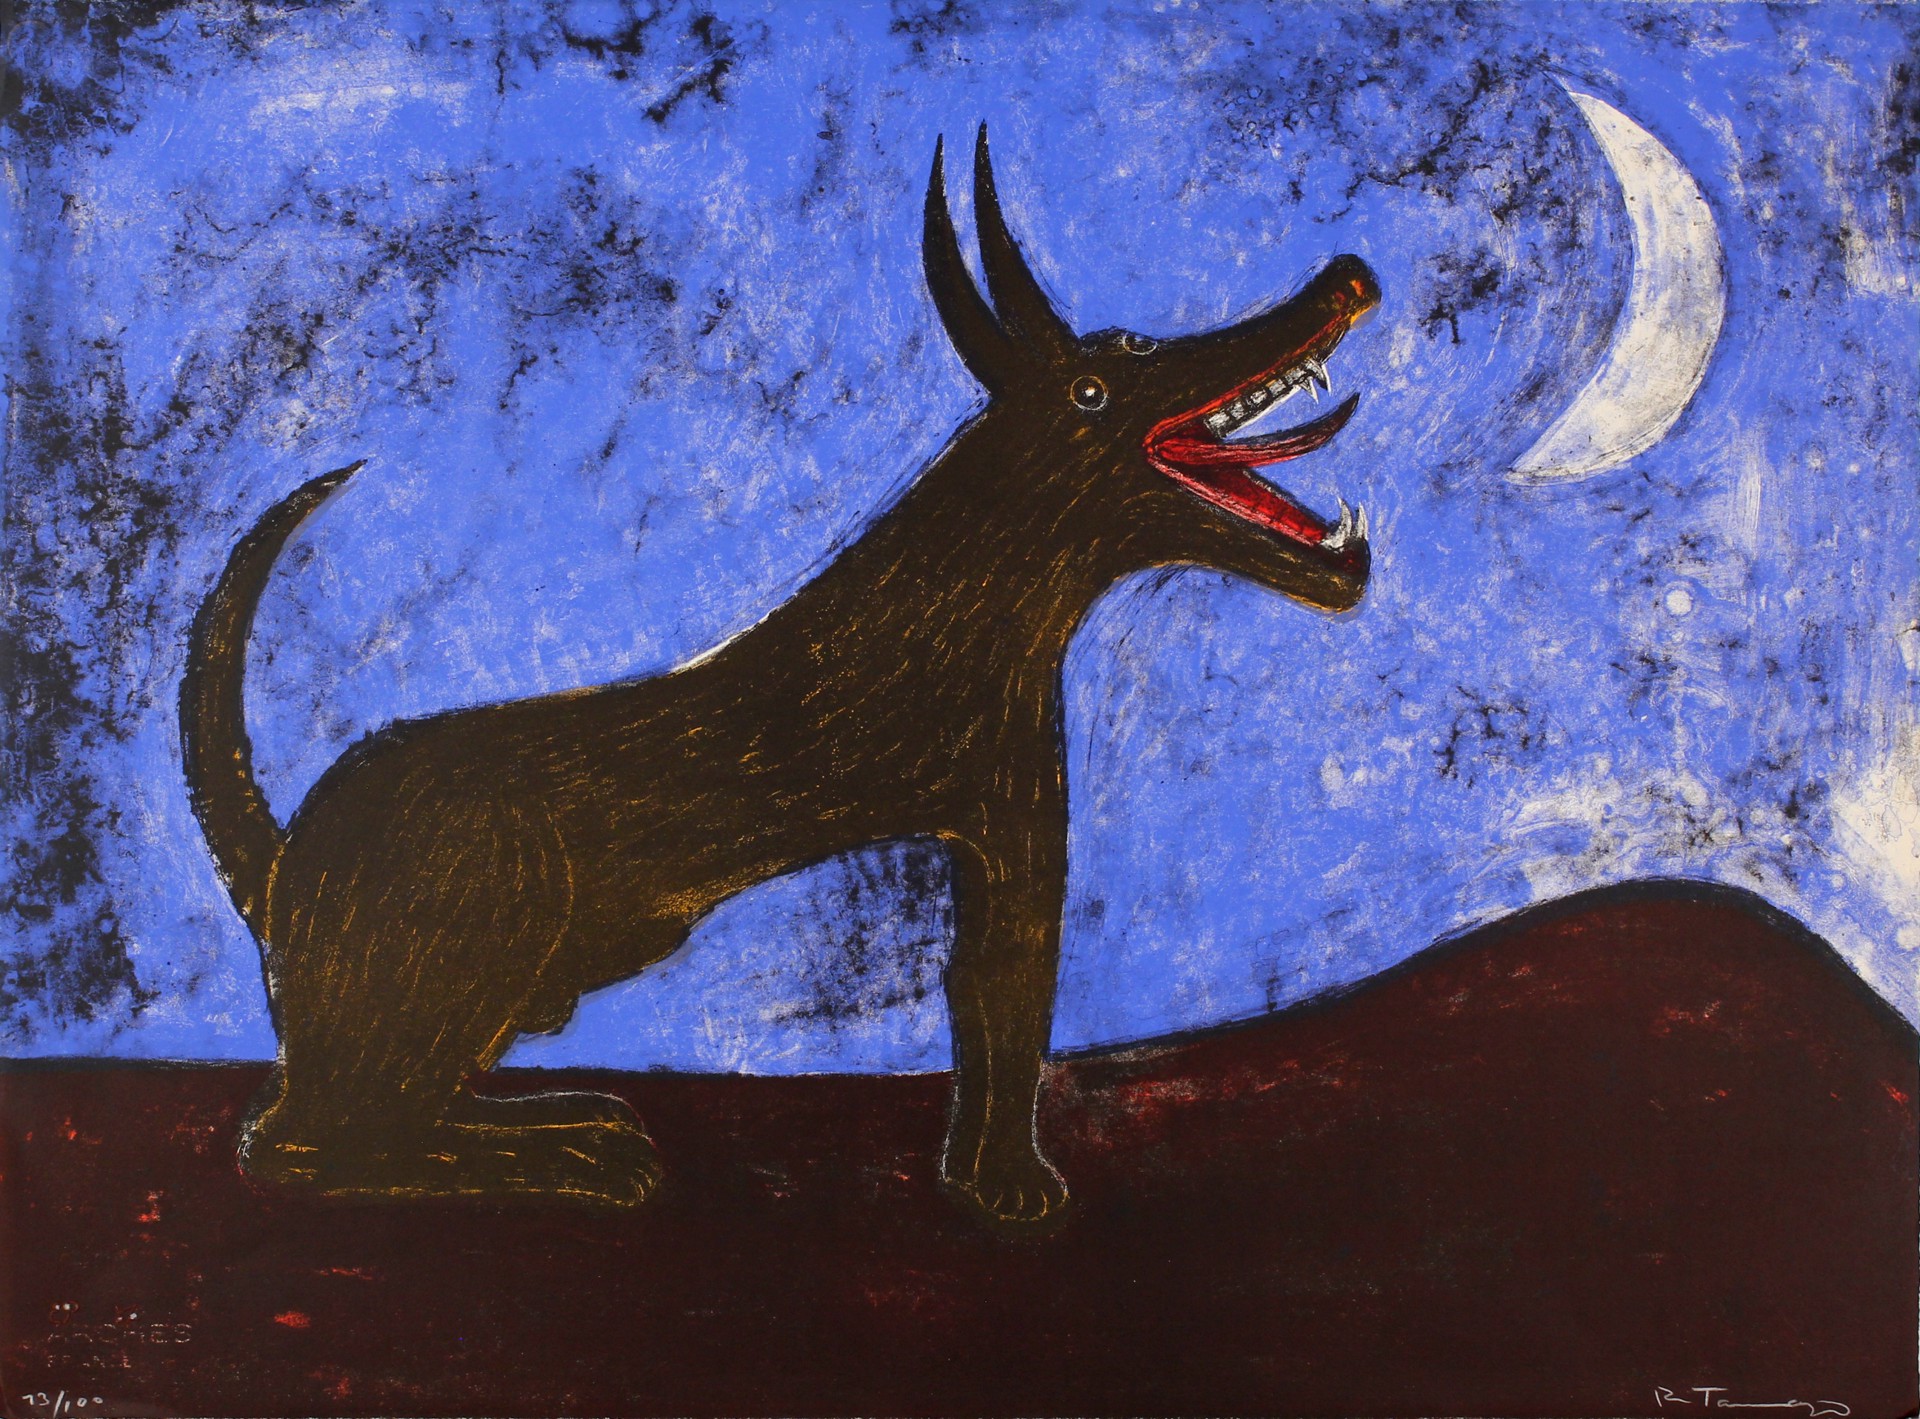 Perro de Luna by Rufino Tamayo (1899 - 1991)